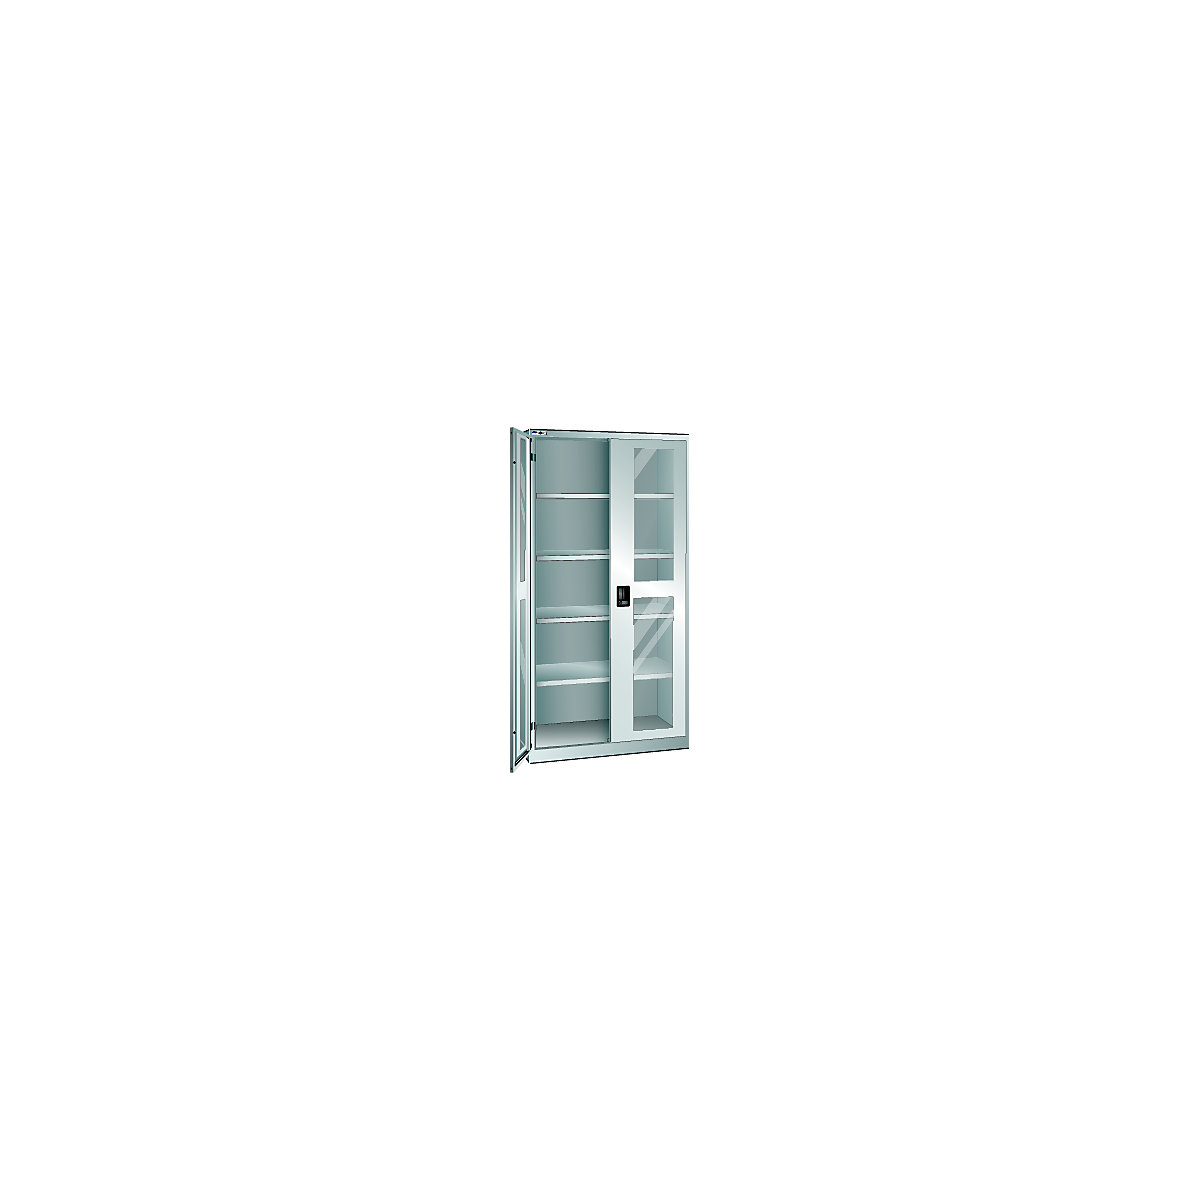 Skriňa s krídlovými dverami – LISTA, dvere s priehľadným okienkom, v x š 1950 x 1000 mm, hĺbka 400 mm, svetlošedá RAL 7035